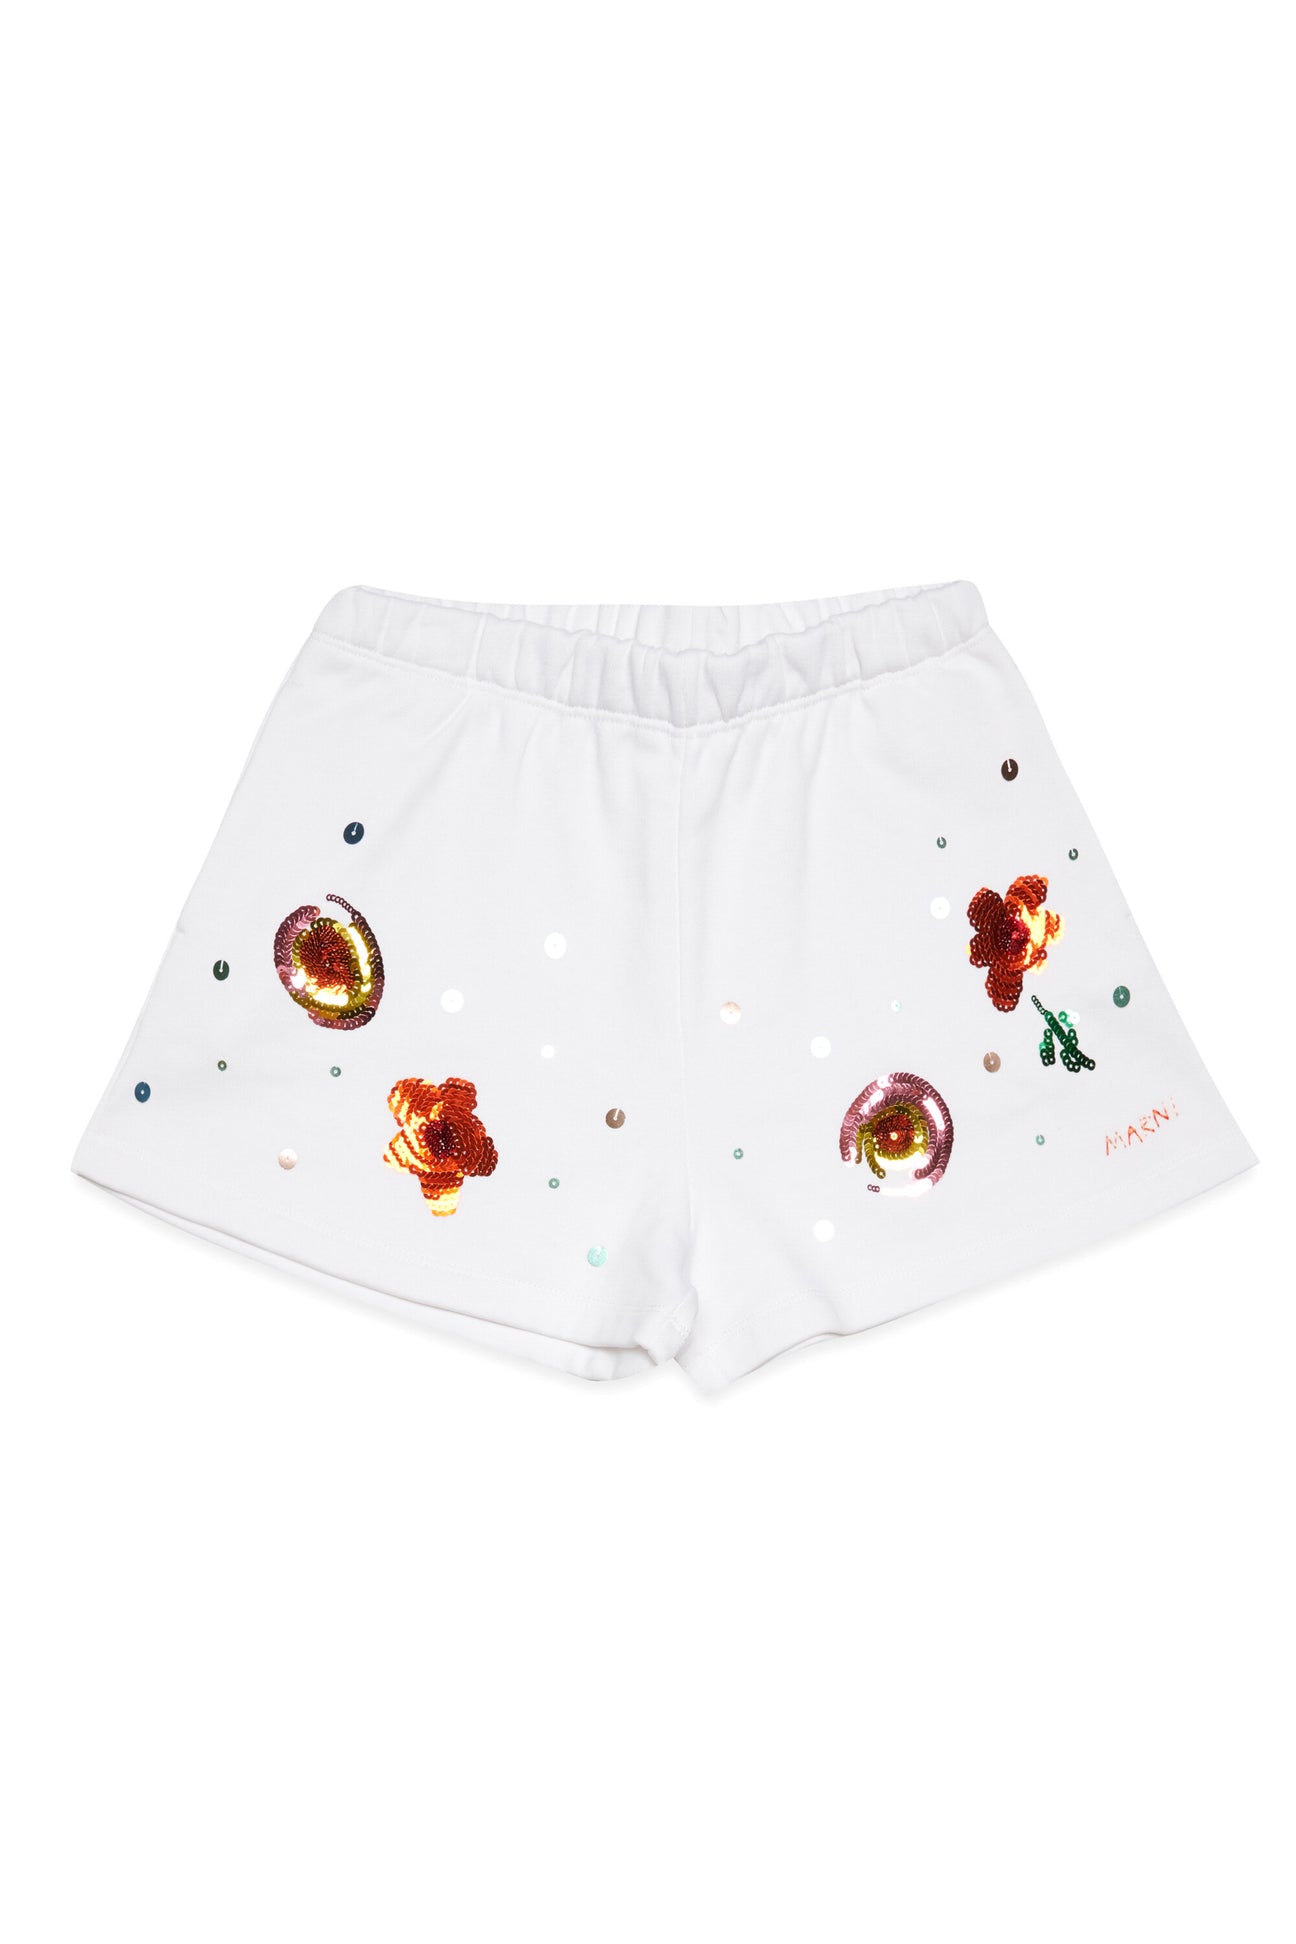 Pantalones cortos en chándal con motivos florales 